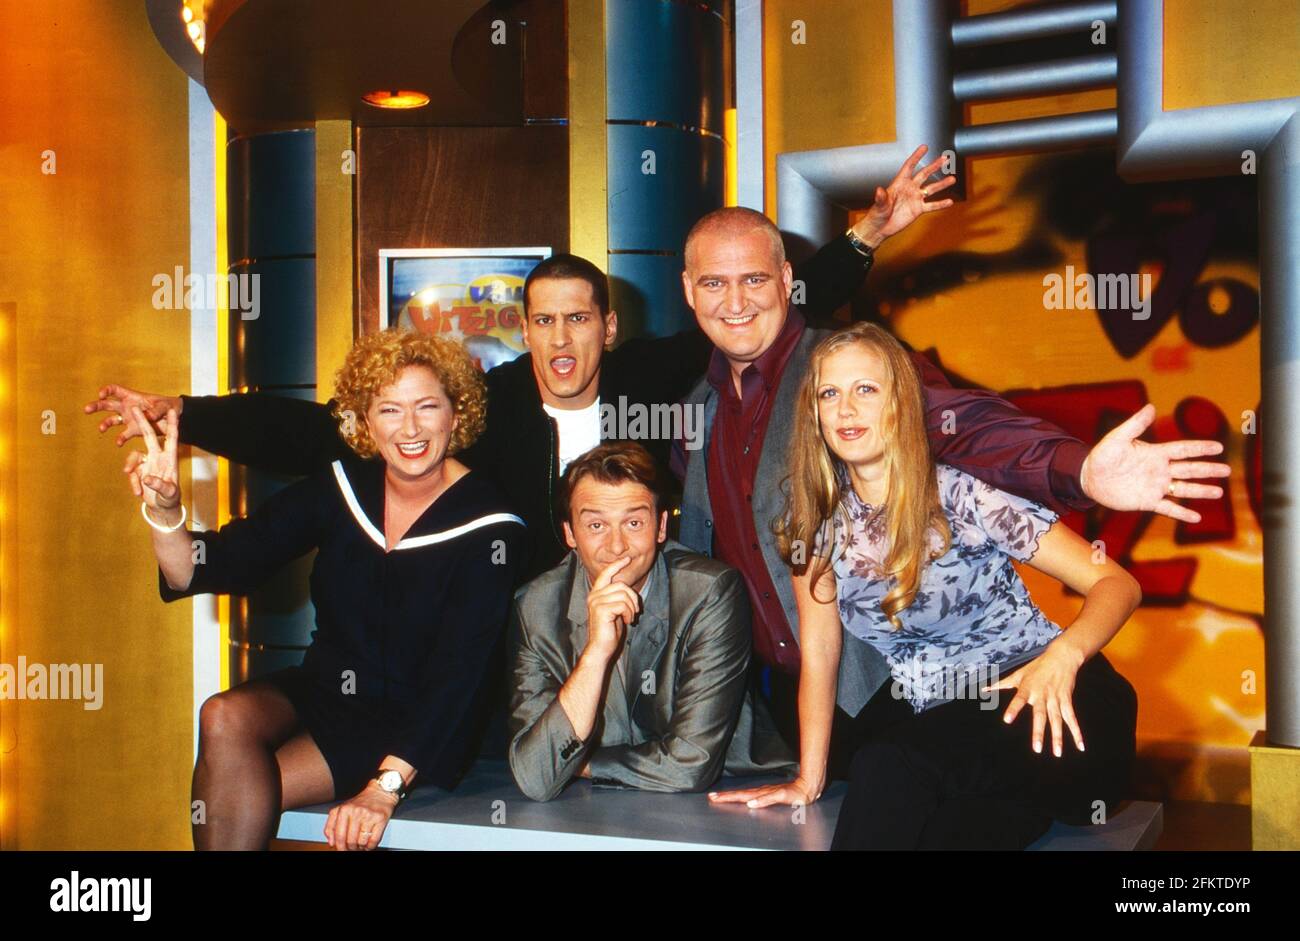 Voll witzig, Comedyreihe, Deutschland 1999, Team: Gabi Decker, Mirco Nontschew, Ralf Günther, Markus Maria Profiltich, Barbara Schöneberger Foto Stock